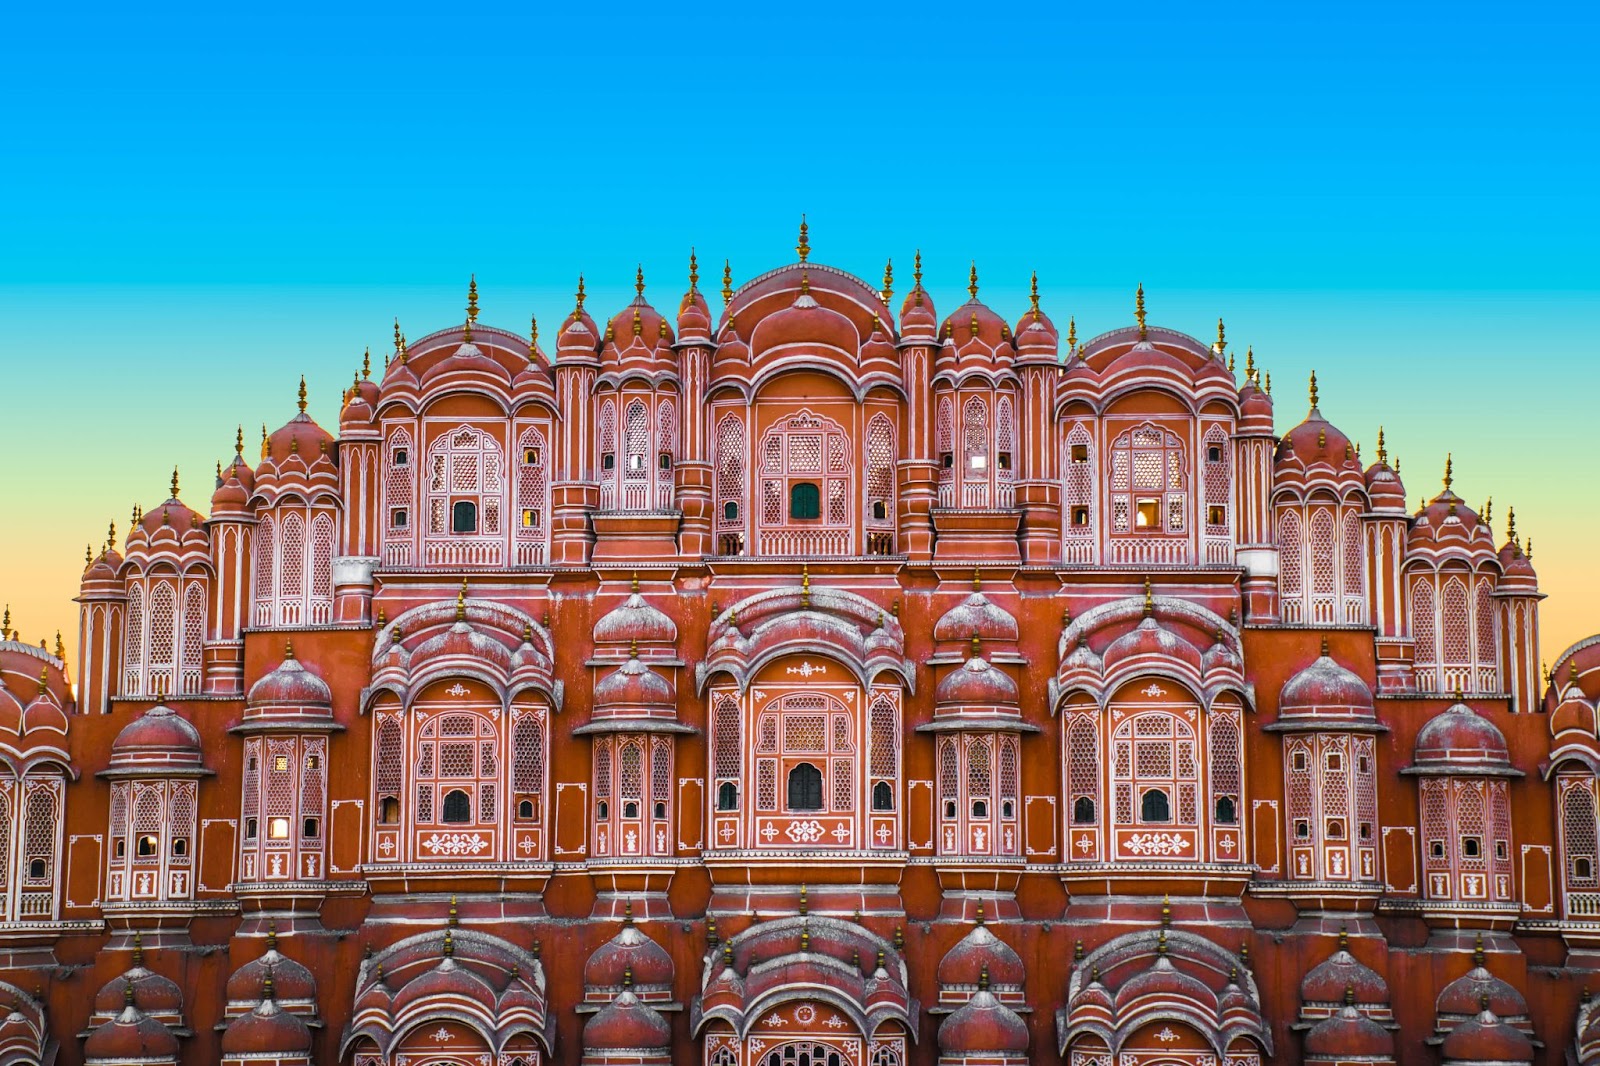 7 Best Digital Marketing Institutes in Jaipur